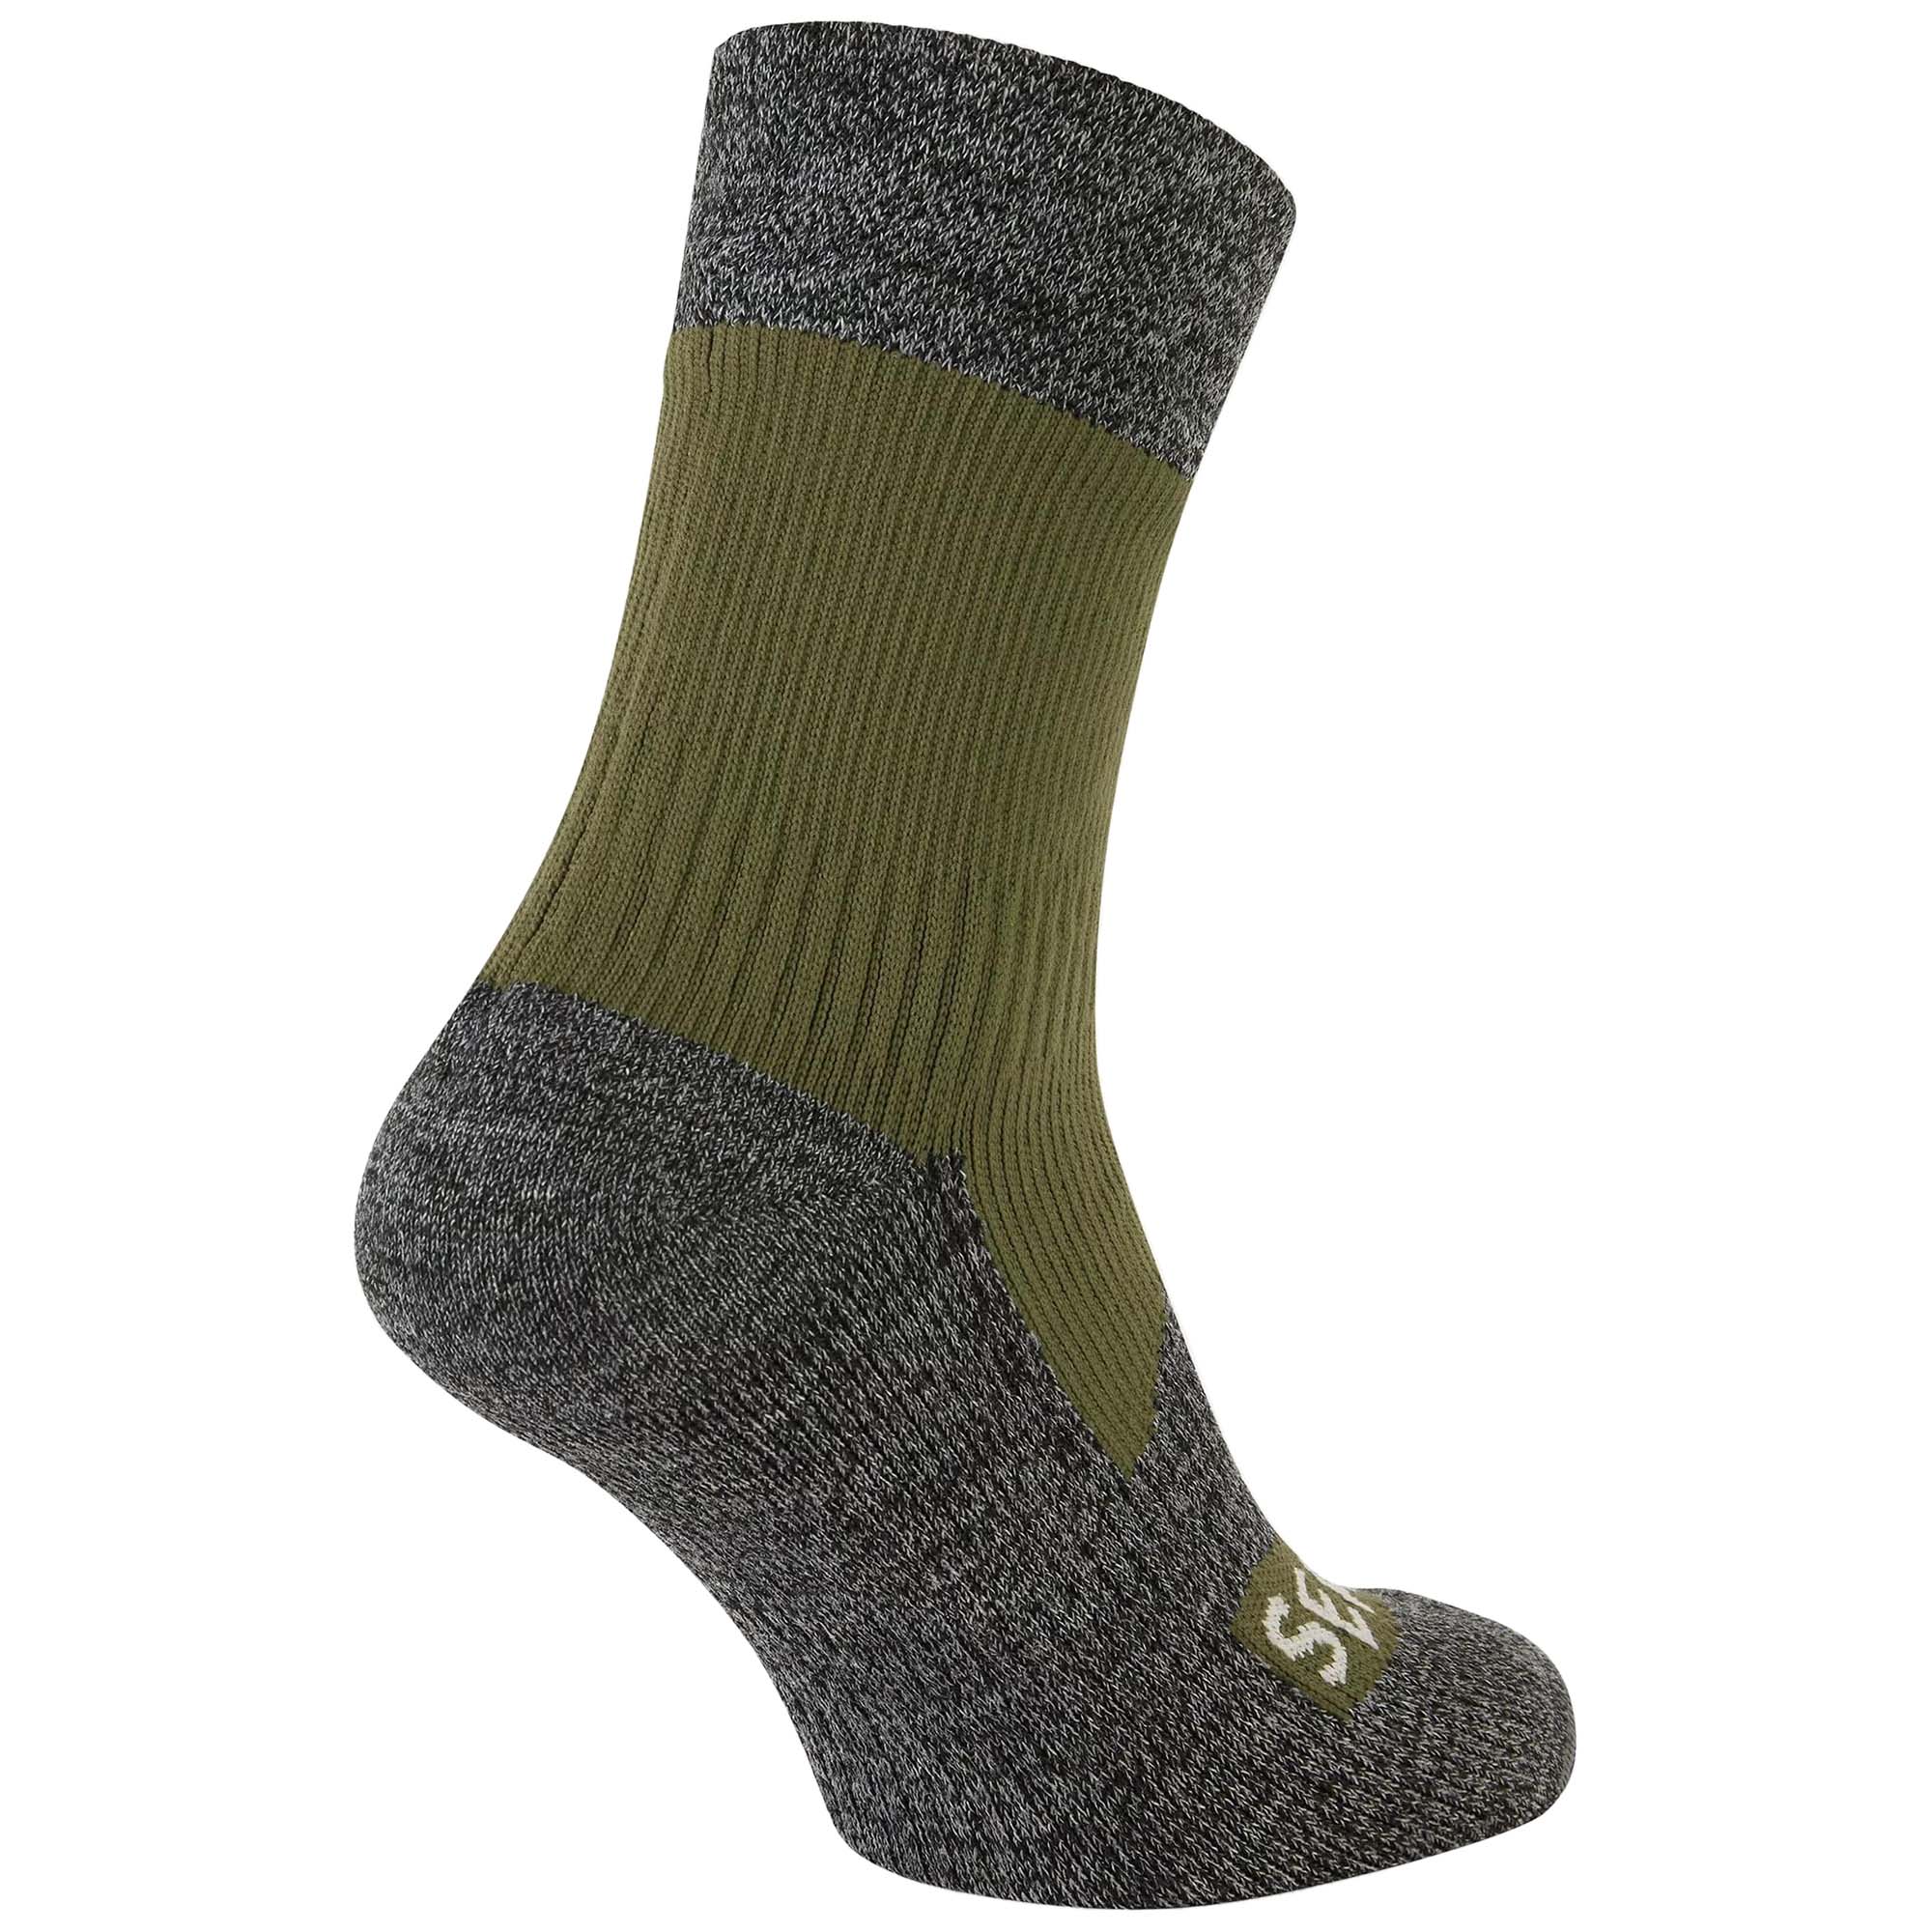 SealSkinz Bircham Waterproof Ankle Socks 